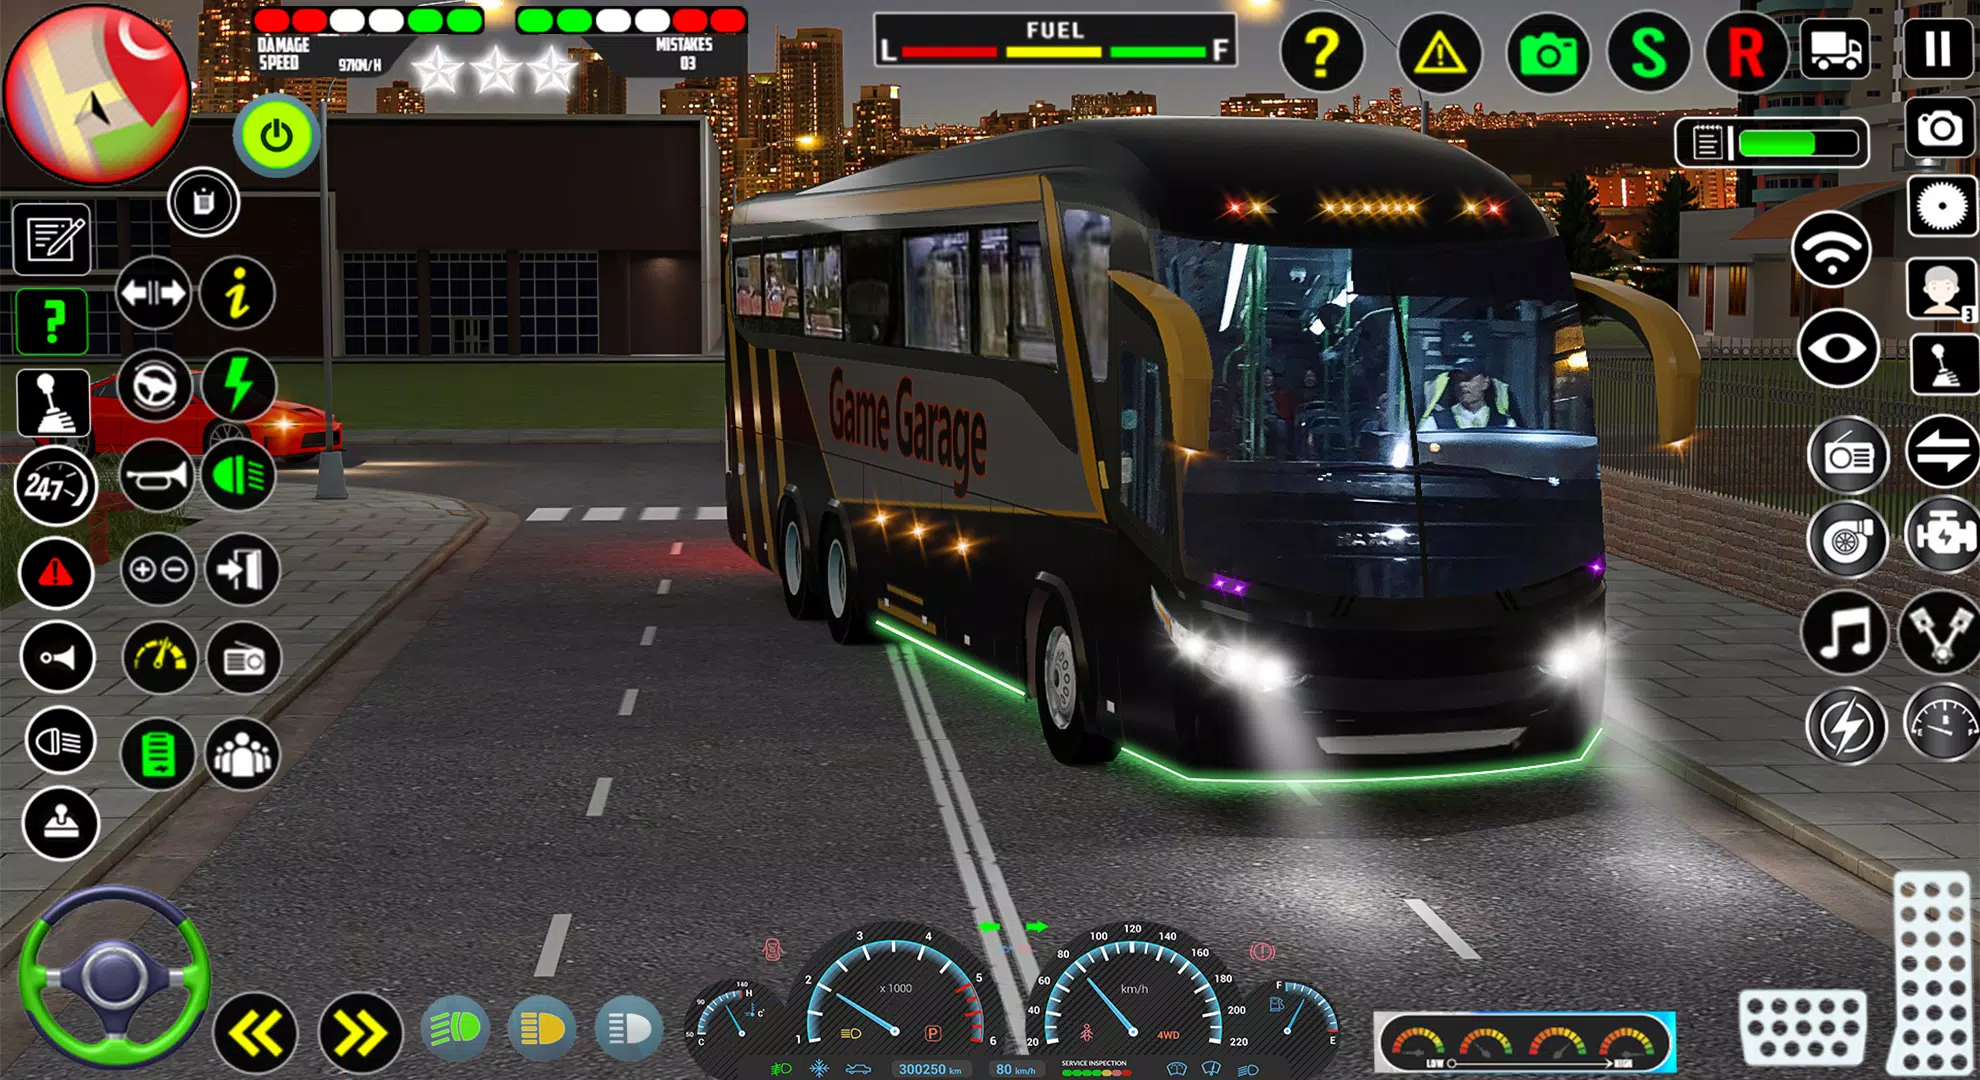 Bus Simulator 3D Game APK para Android - Download